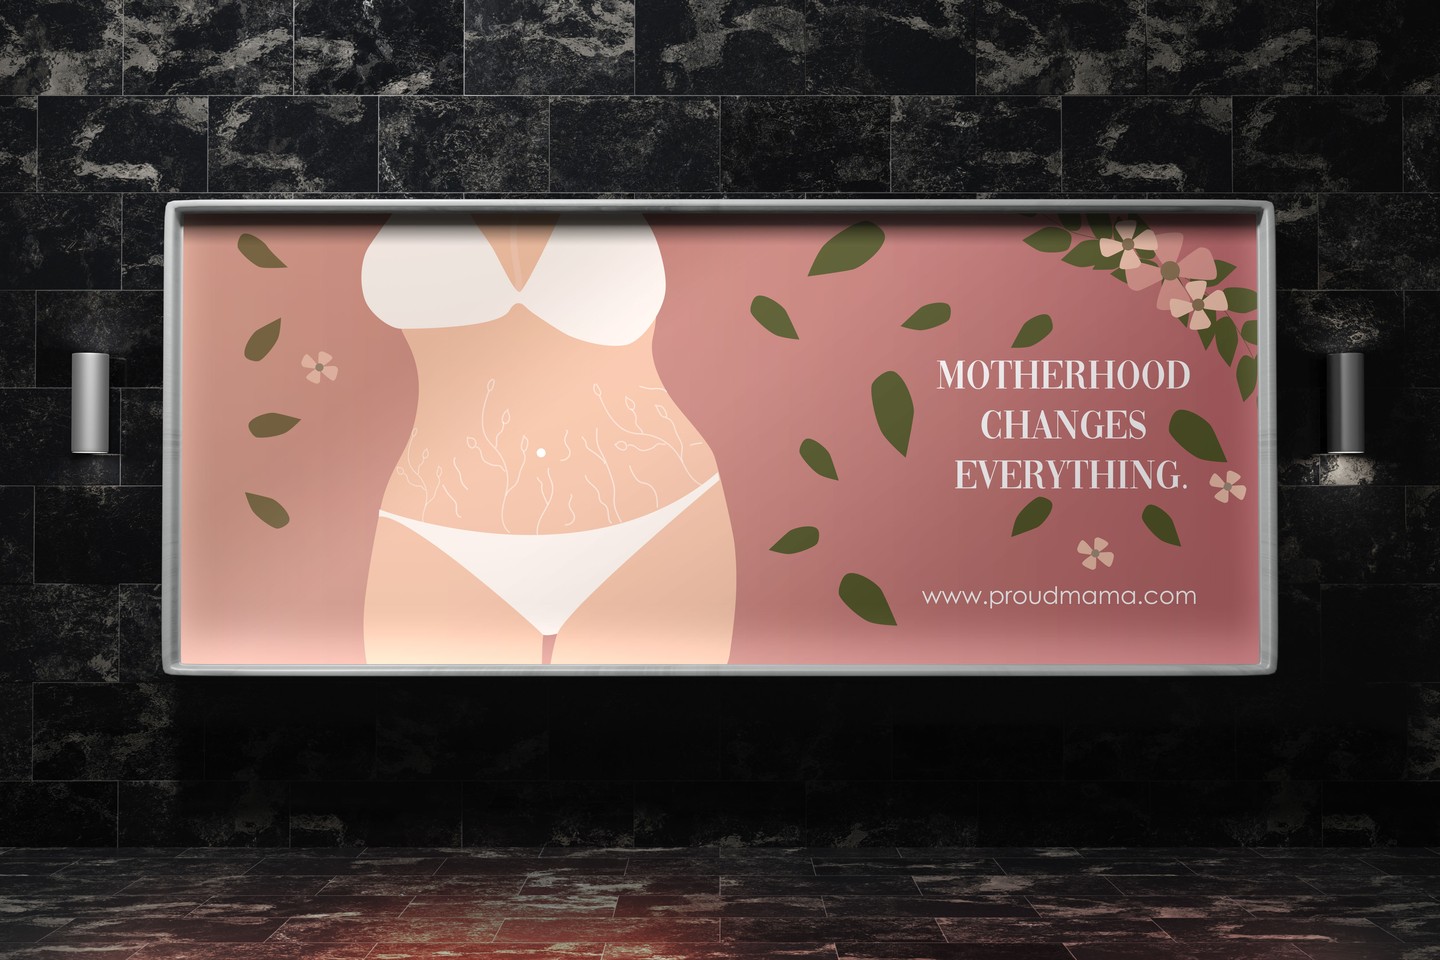 Creation of a social ad to fight against post-partum stereotypes.

Création d'une publicité sociétale pour lutter contre les stéréotypes du post-partum.

#schoolproject #projetecole #postpartum #design #illustration #motherhood #beauty